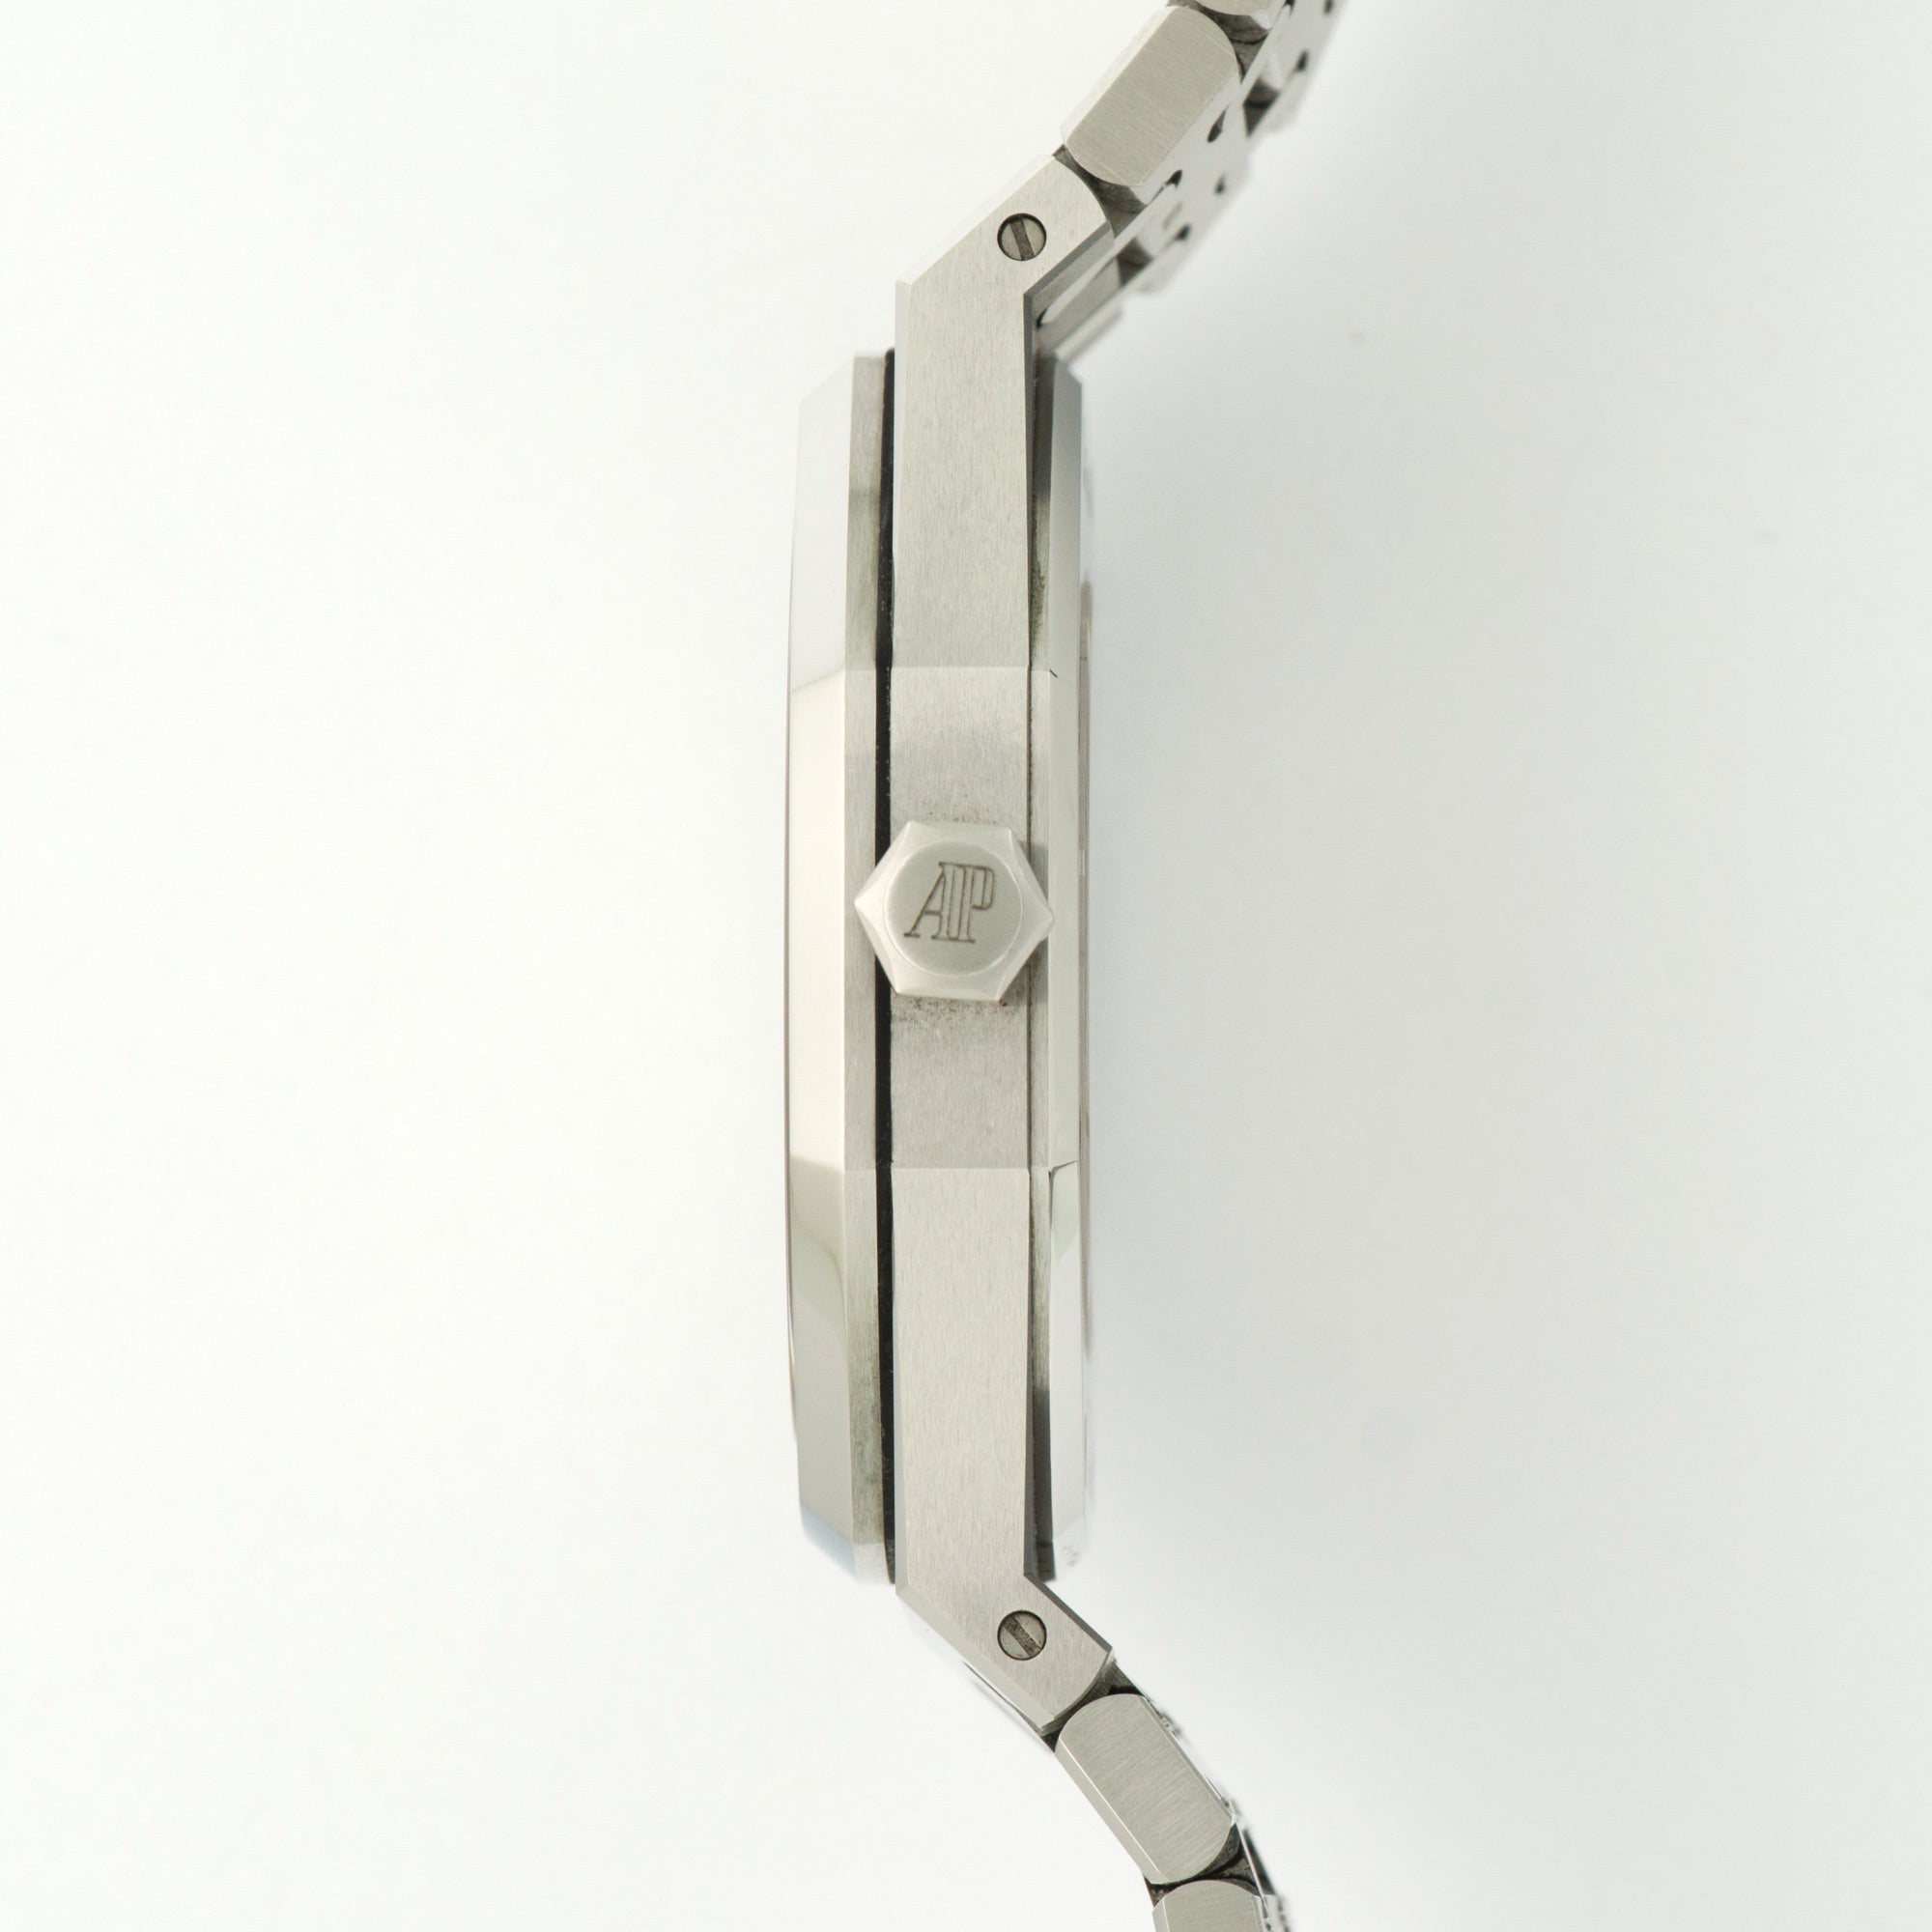 Audemars Piguet - Audemars Piguet Royal Oak Automatic Watch Ref. 15400 - The Keystone Watches